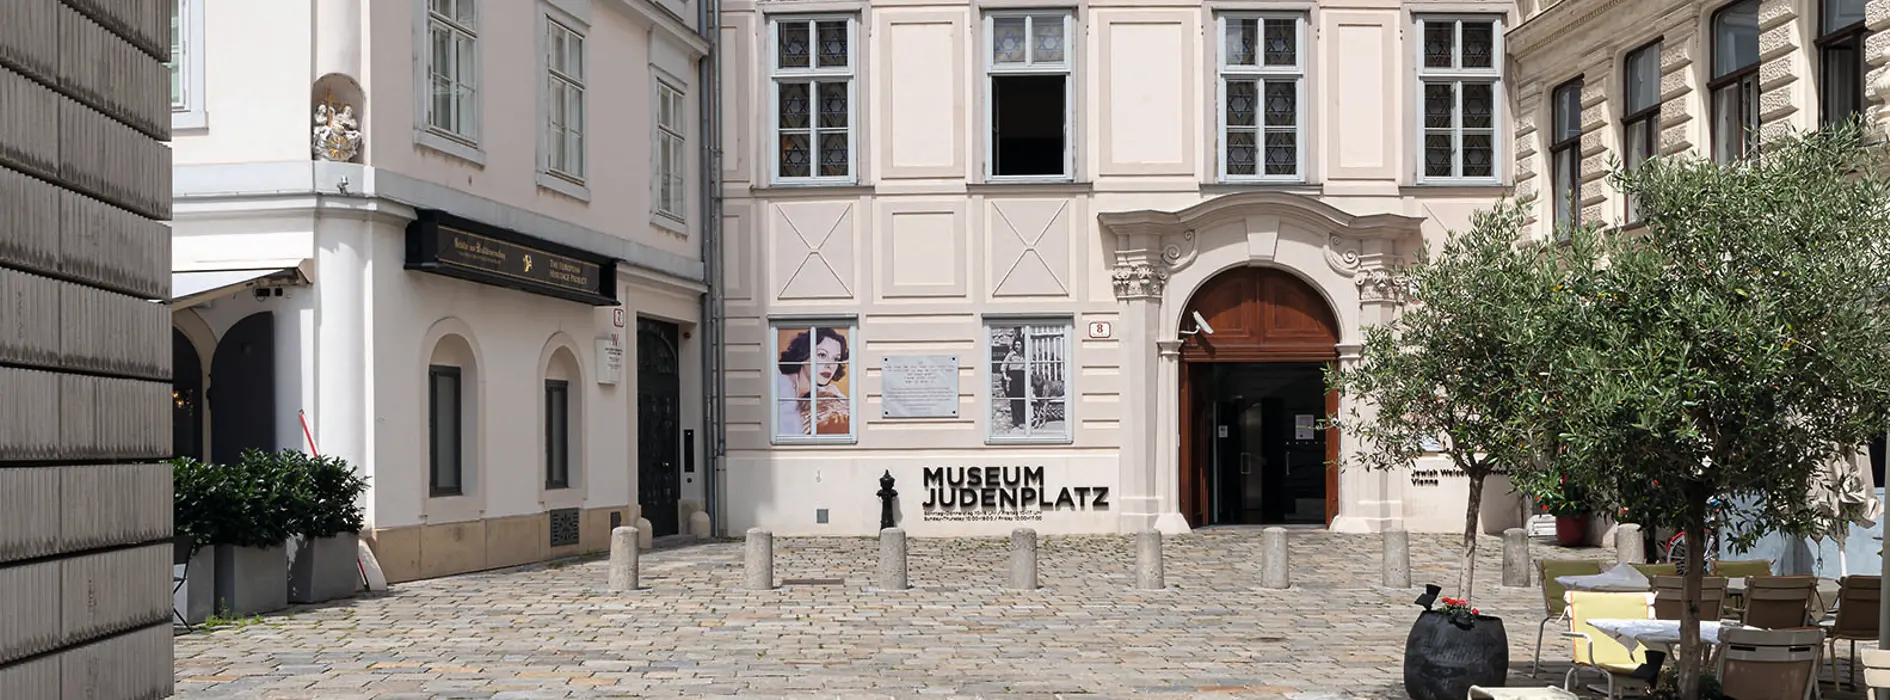 Muzeul Judenplatz